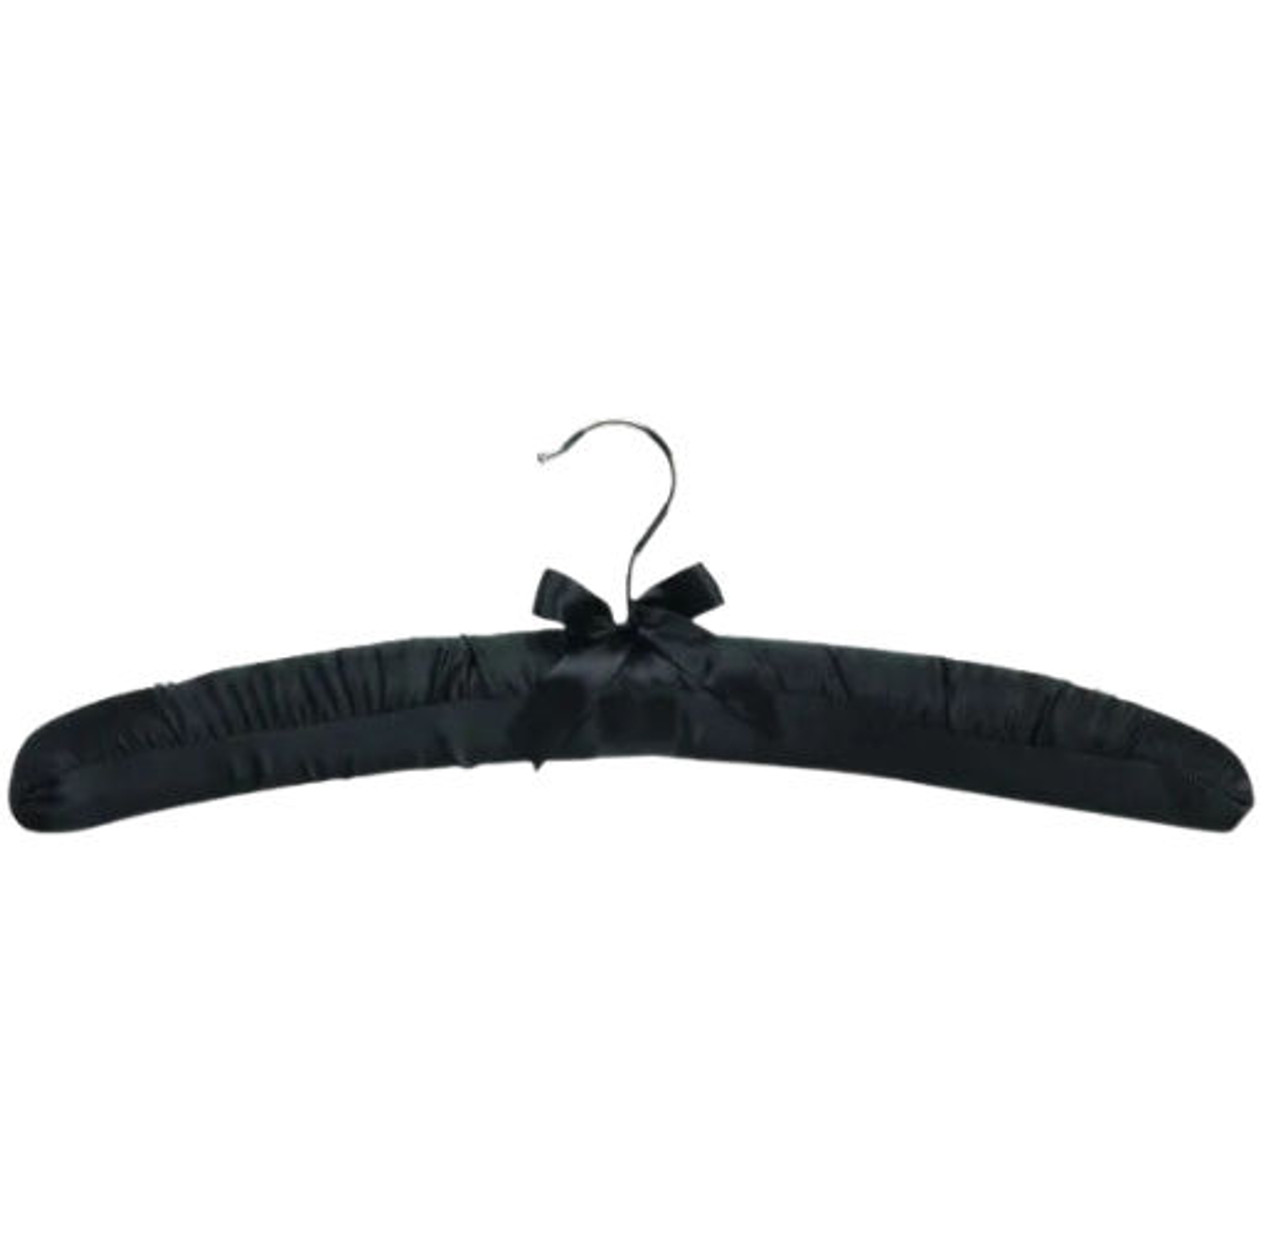 Black Satin Padded Hanger, 43cm Extra Strong Each